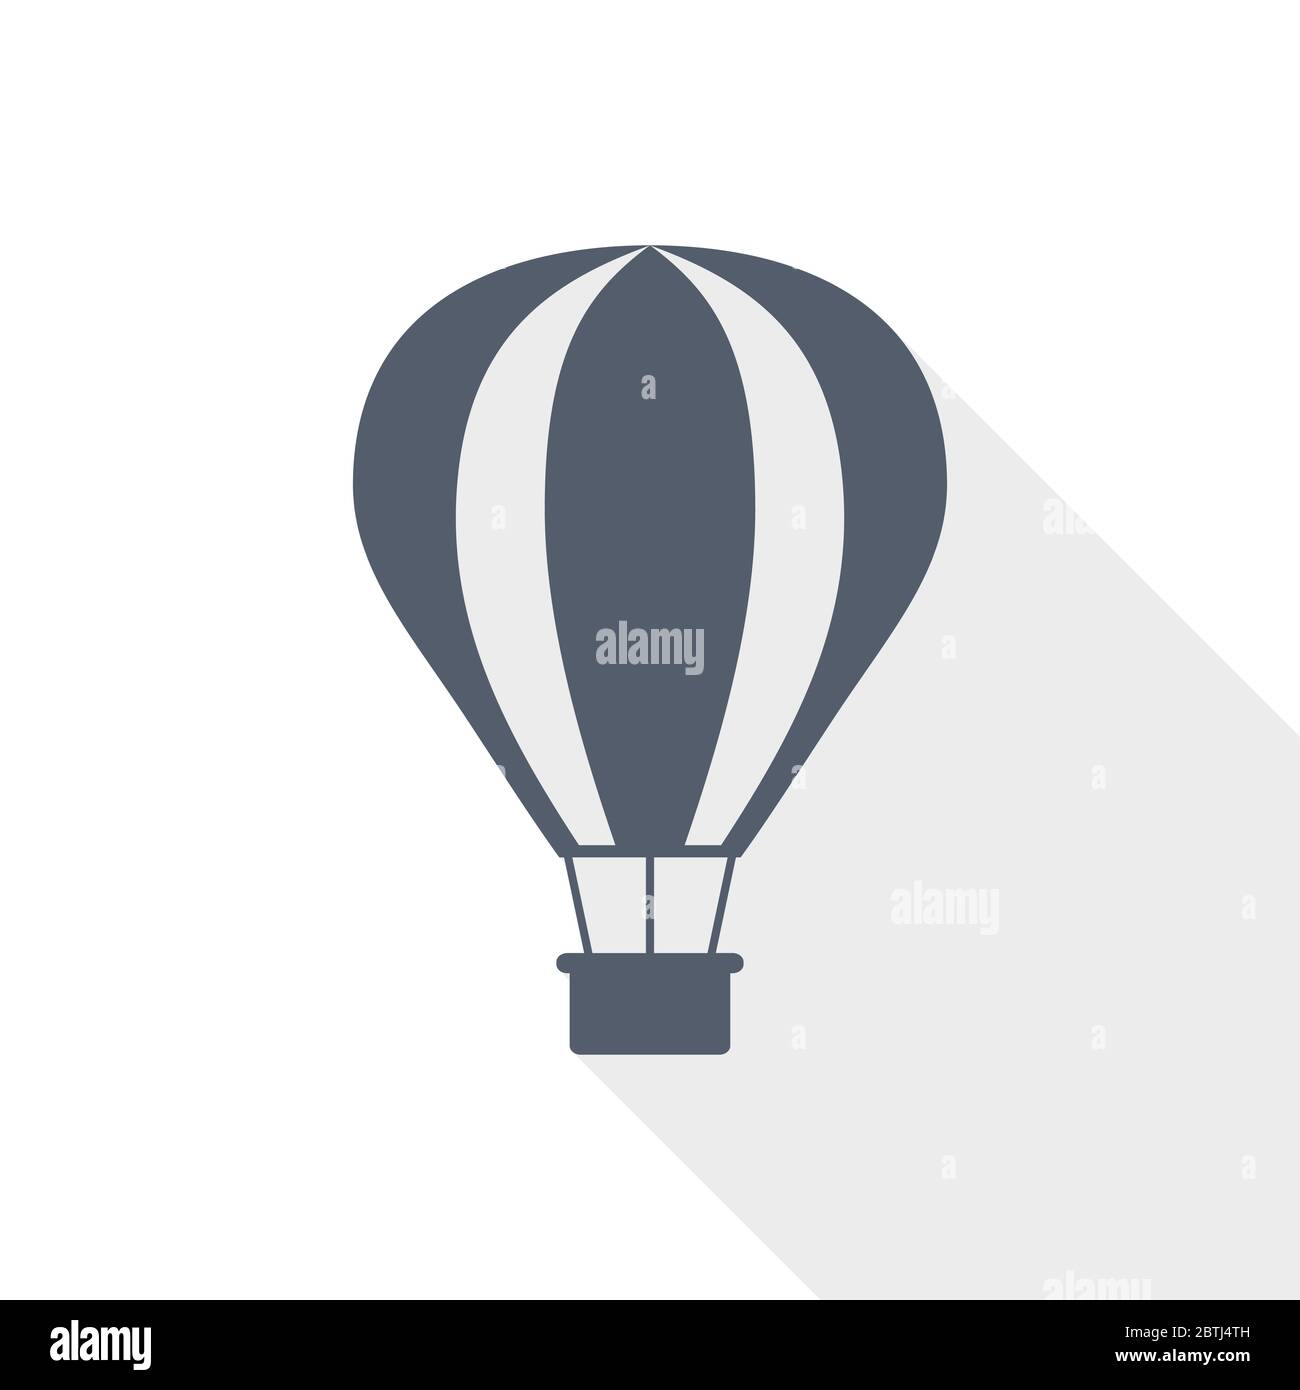 Balloon, air transport flat design vector icon Stock Vector